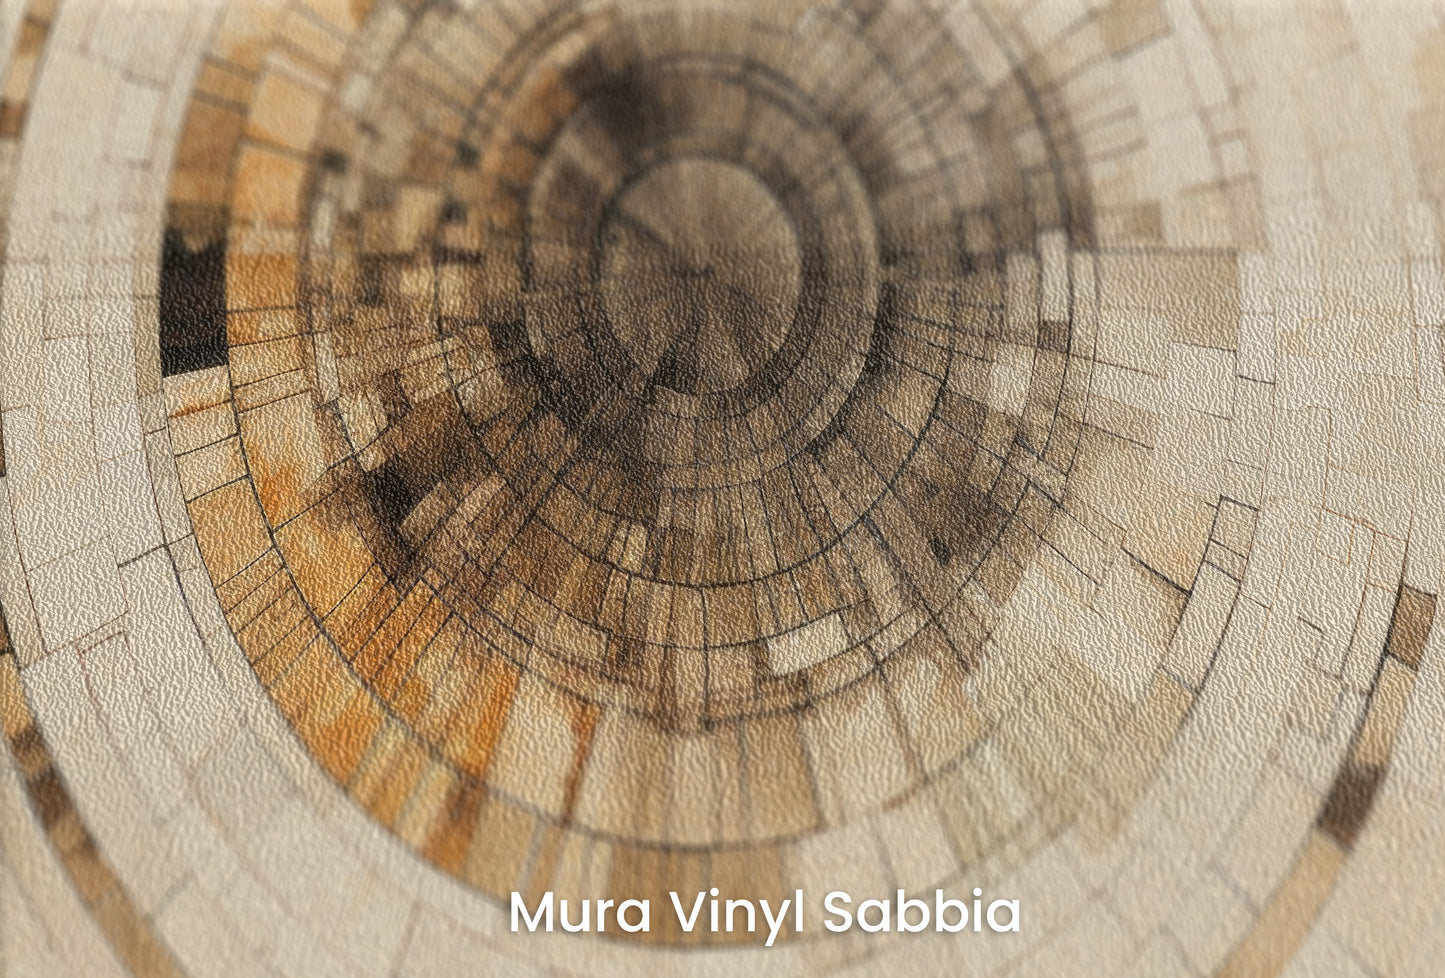 Zbliżenie na artystyczną fototapetę o nazwie ANCIENT ECHOES SPIRAL na podłożu Mura Vinyl Sabbia struktura grubego ziarna piasku.